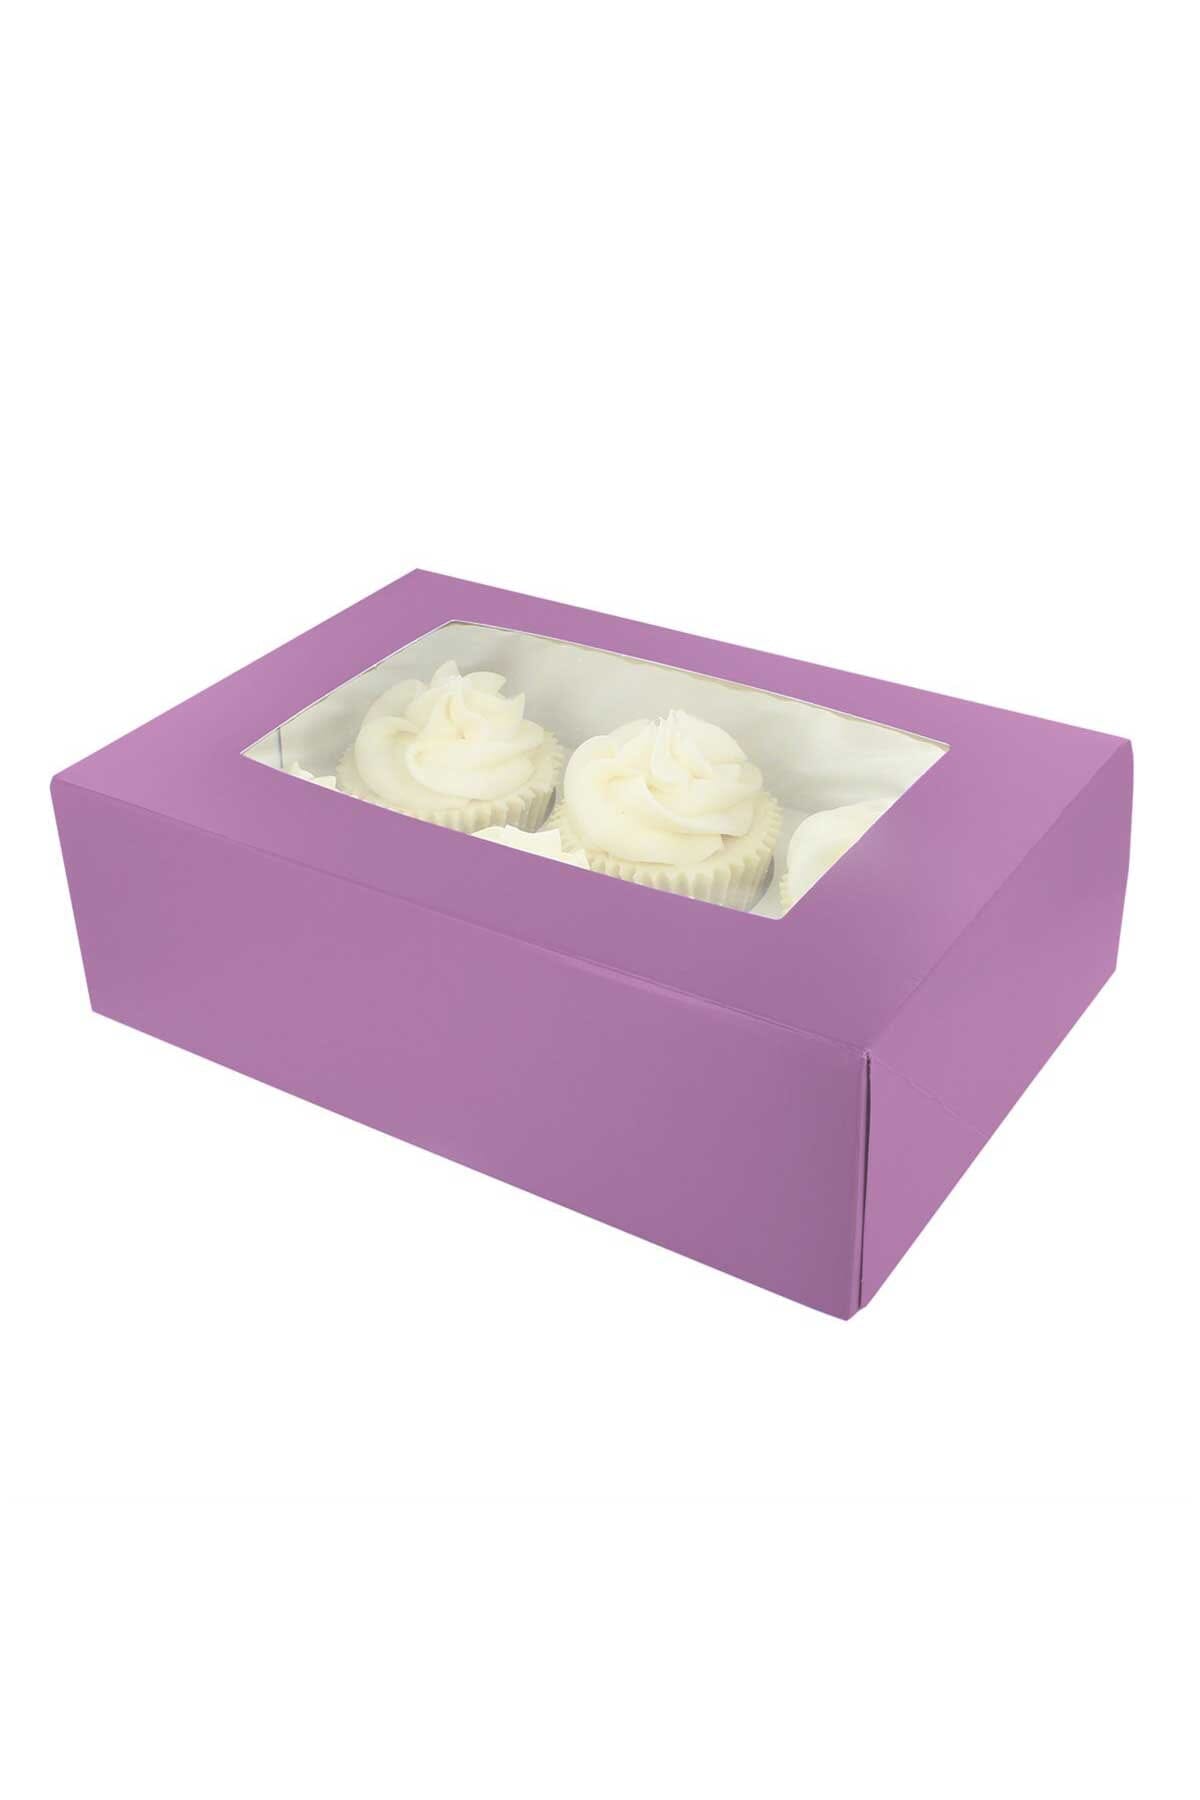 6 Hole Cupcake Box - Deep Purple Cake Box Sprinkly 